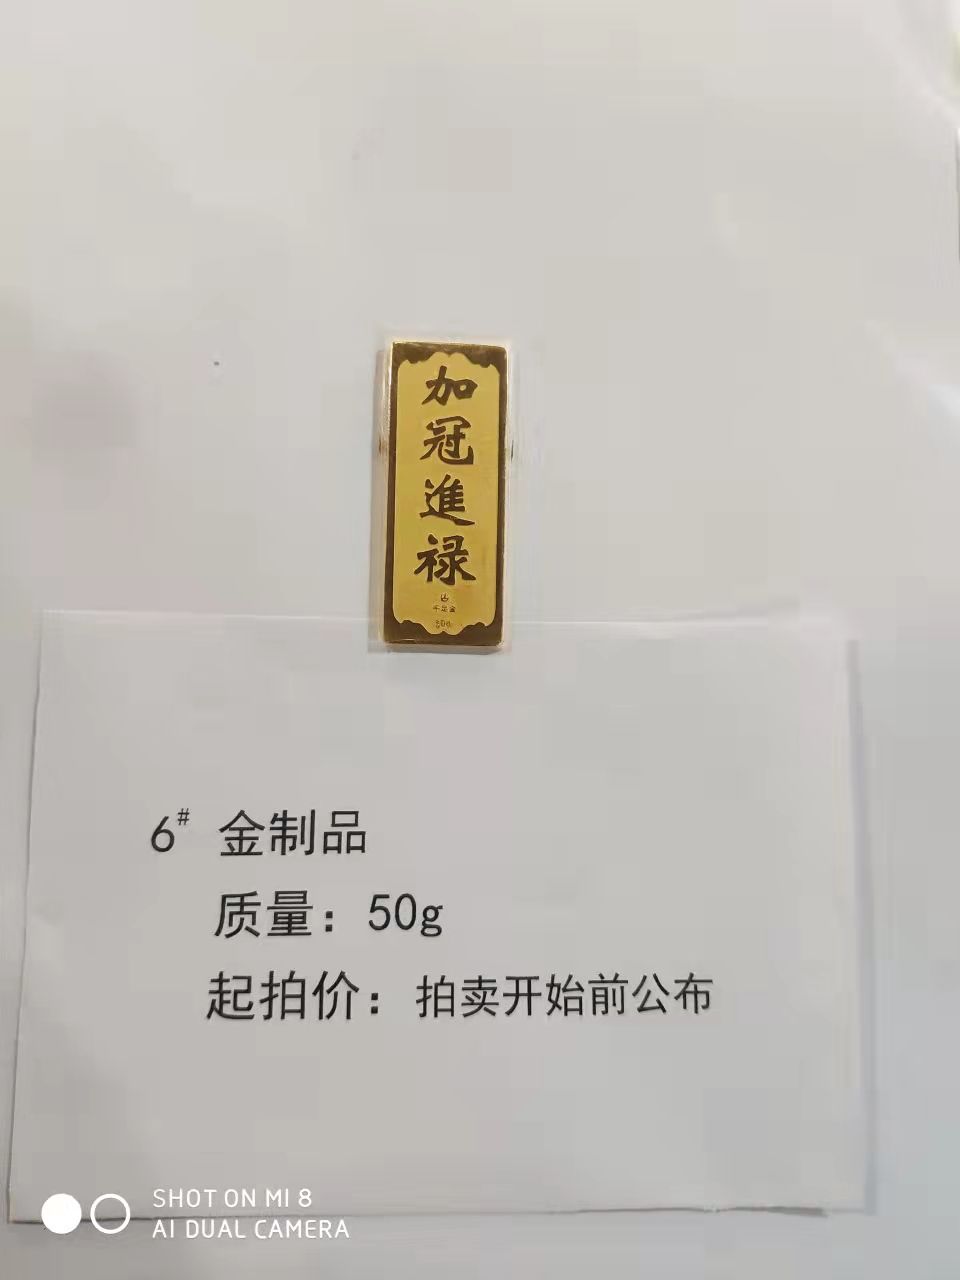 6金制品50g-辽宁省拍卖行